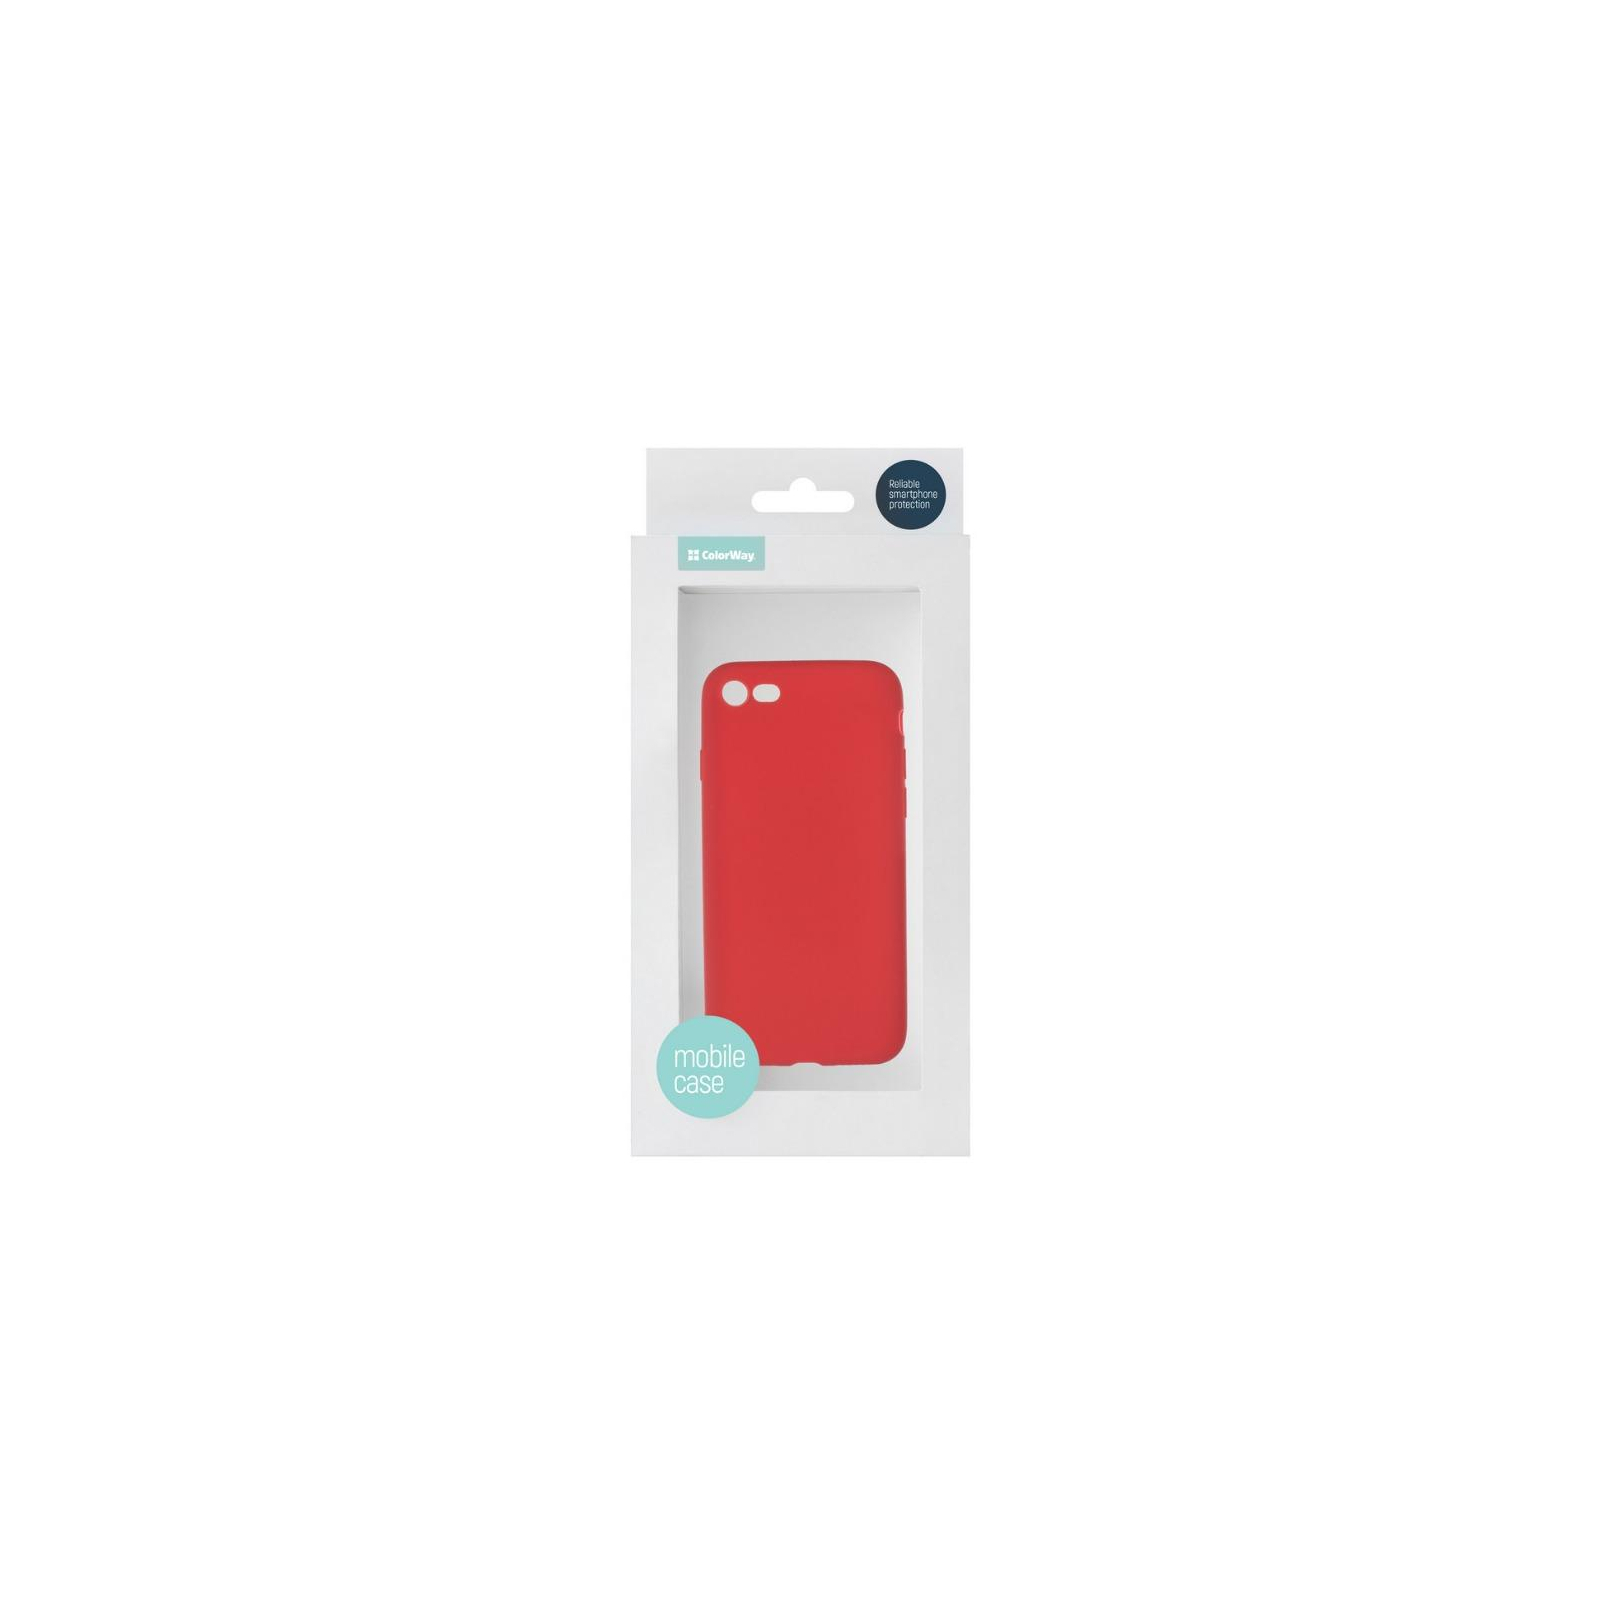 Чехол для мобильного телефона ColorWay ultrathin TPU case for Apple iPhone 8 red (CW-CTPAI8-RD) изображение 4